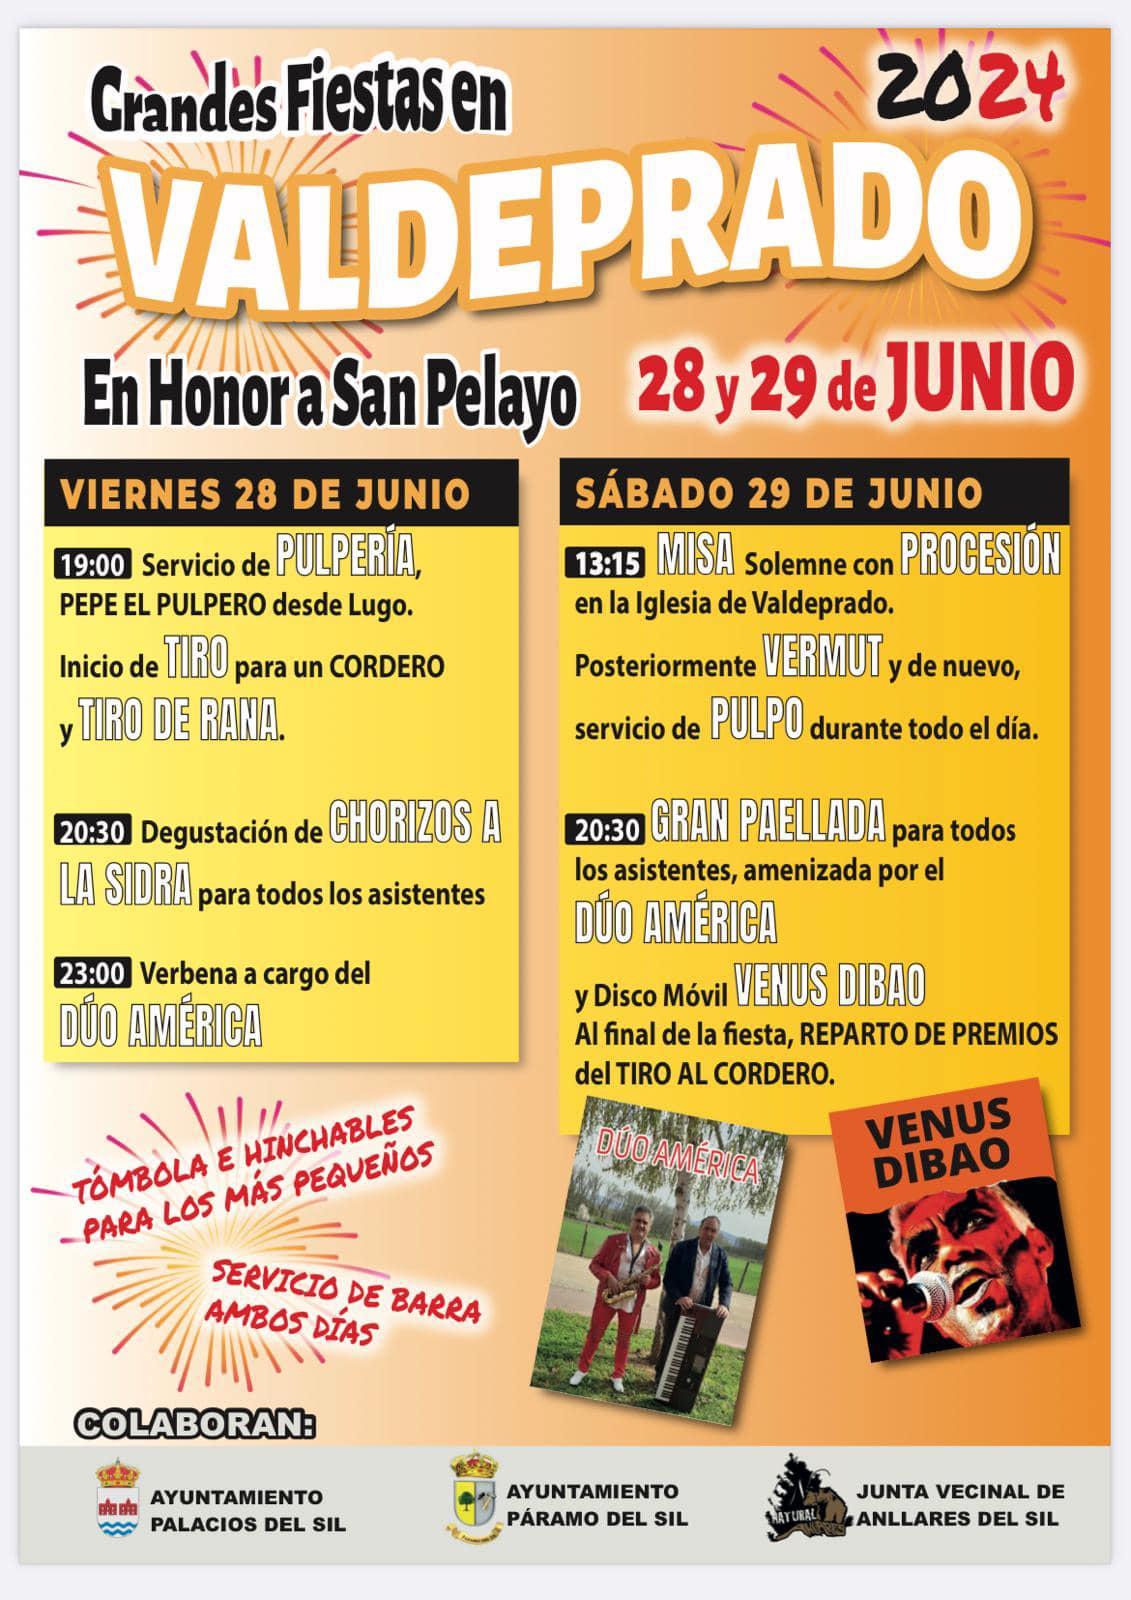 Fiestas en Valdeprado en honor a San Pelayo los días 28 y 29 de junio 2024 2